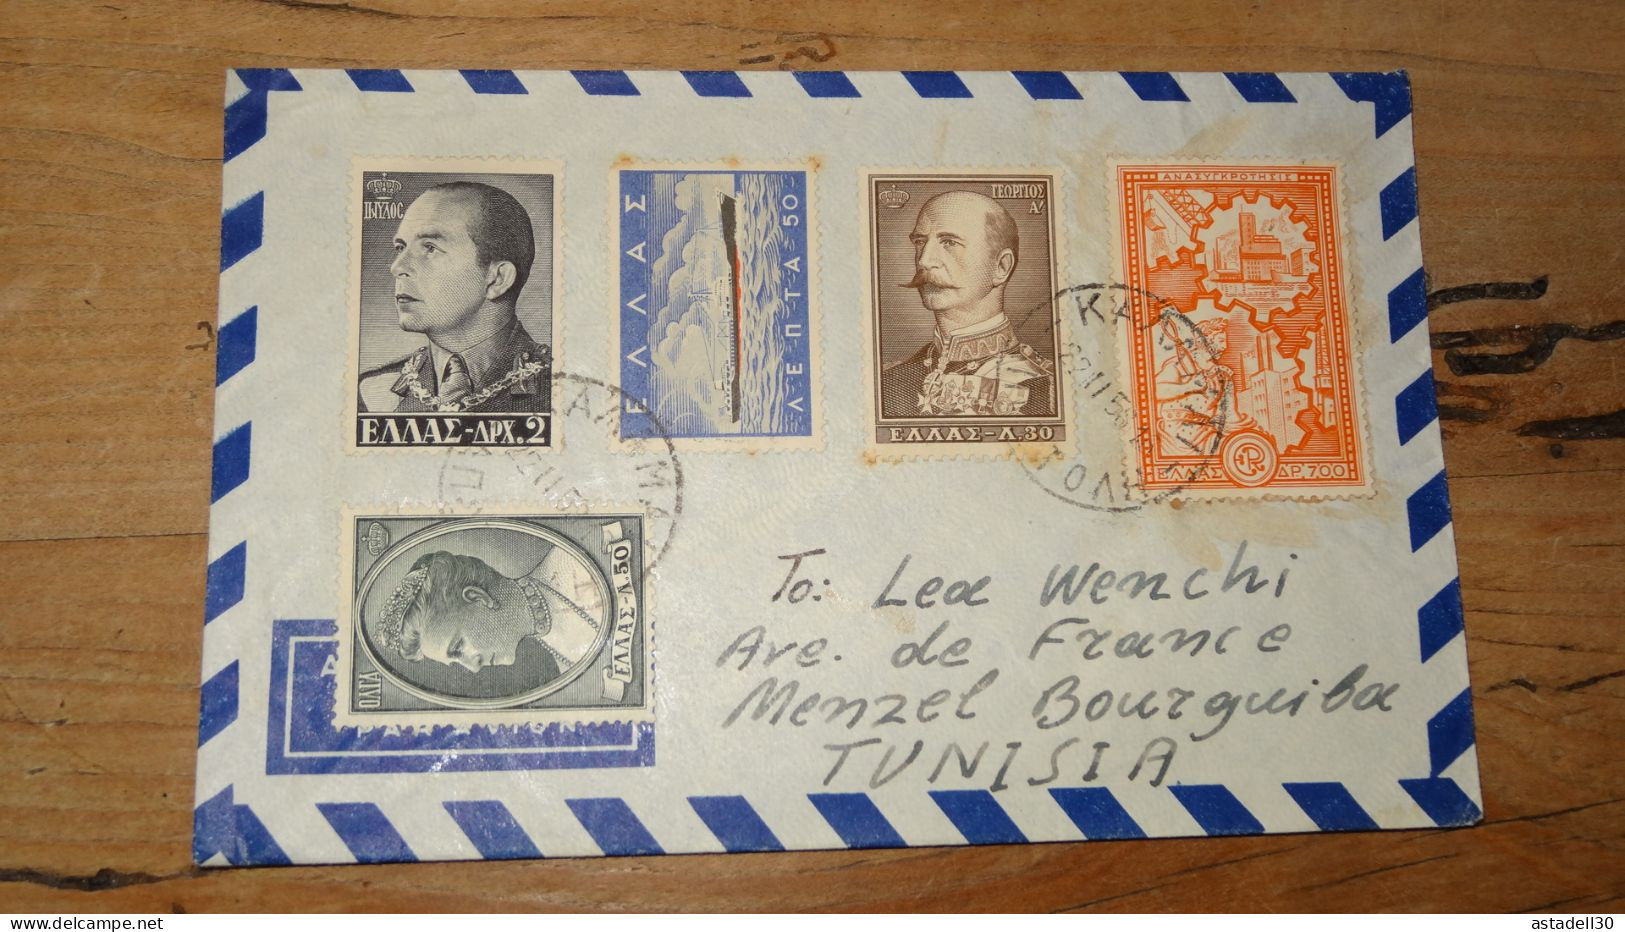 Enveloppe GRECE, Kalamata To Tunisia 1956  ............ Boite1 .............. 240424-284 - Lettres & Documents